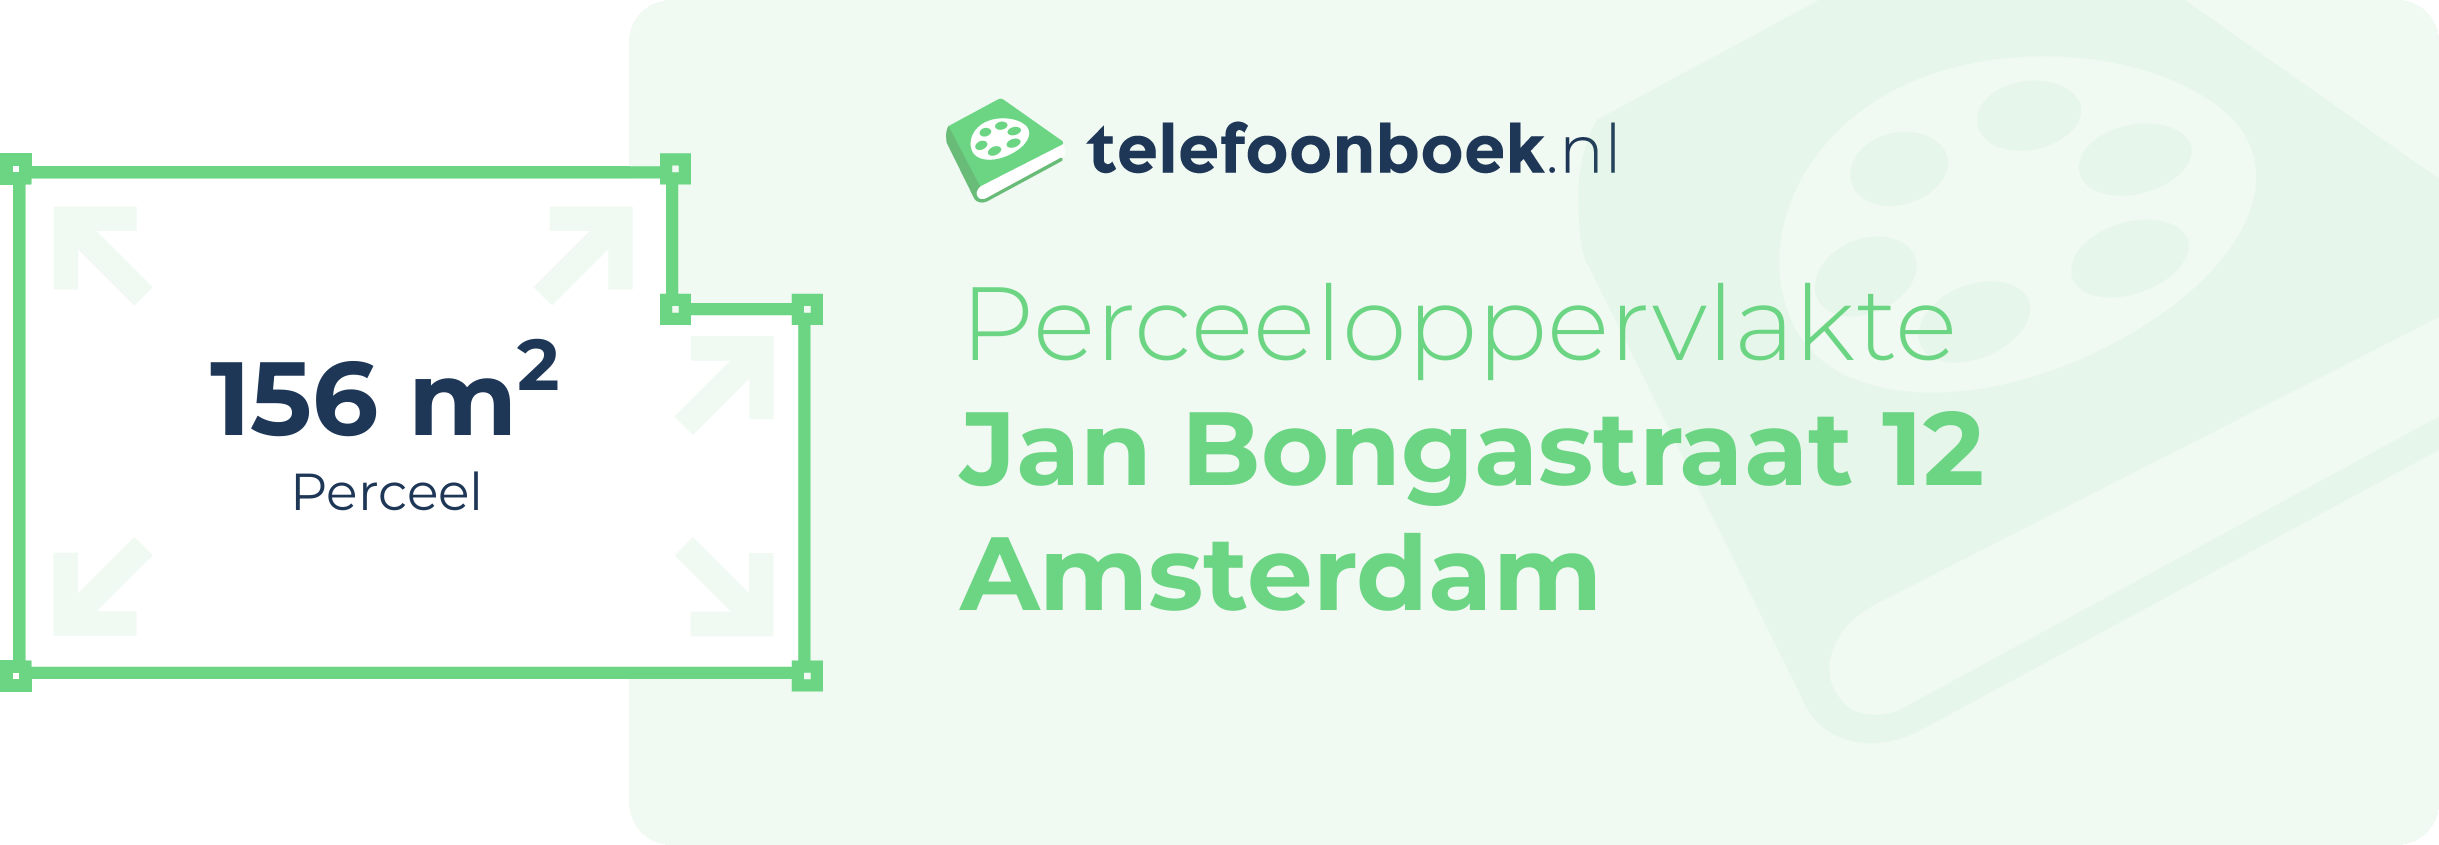 Perceeloppervlakte Jan Bongastraat 12 Amsterdam